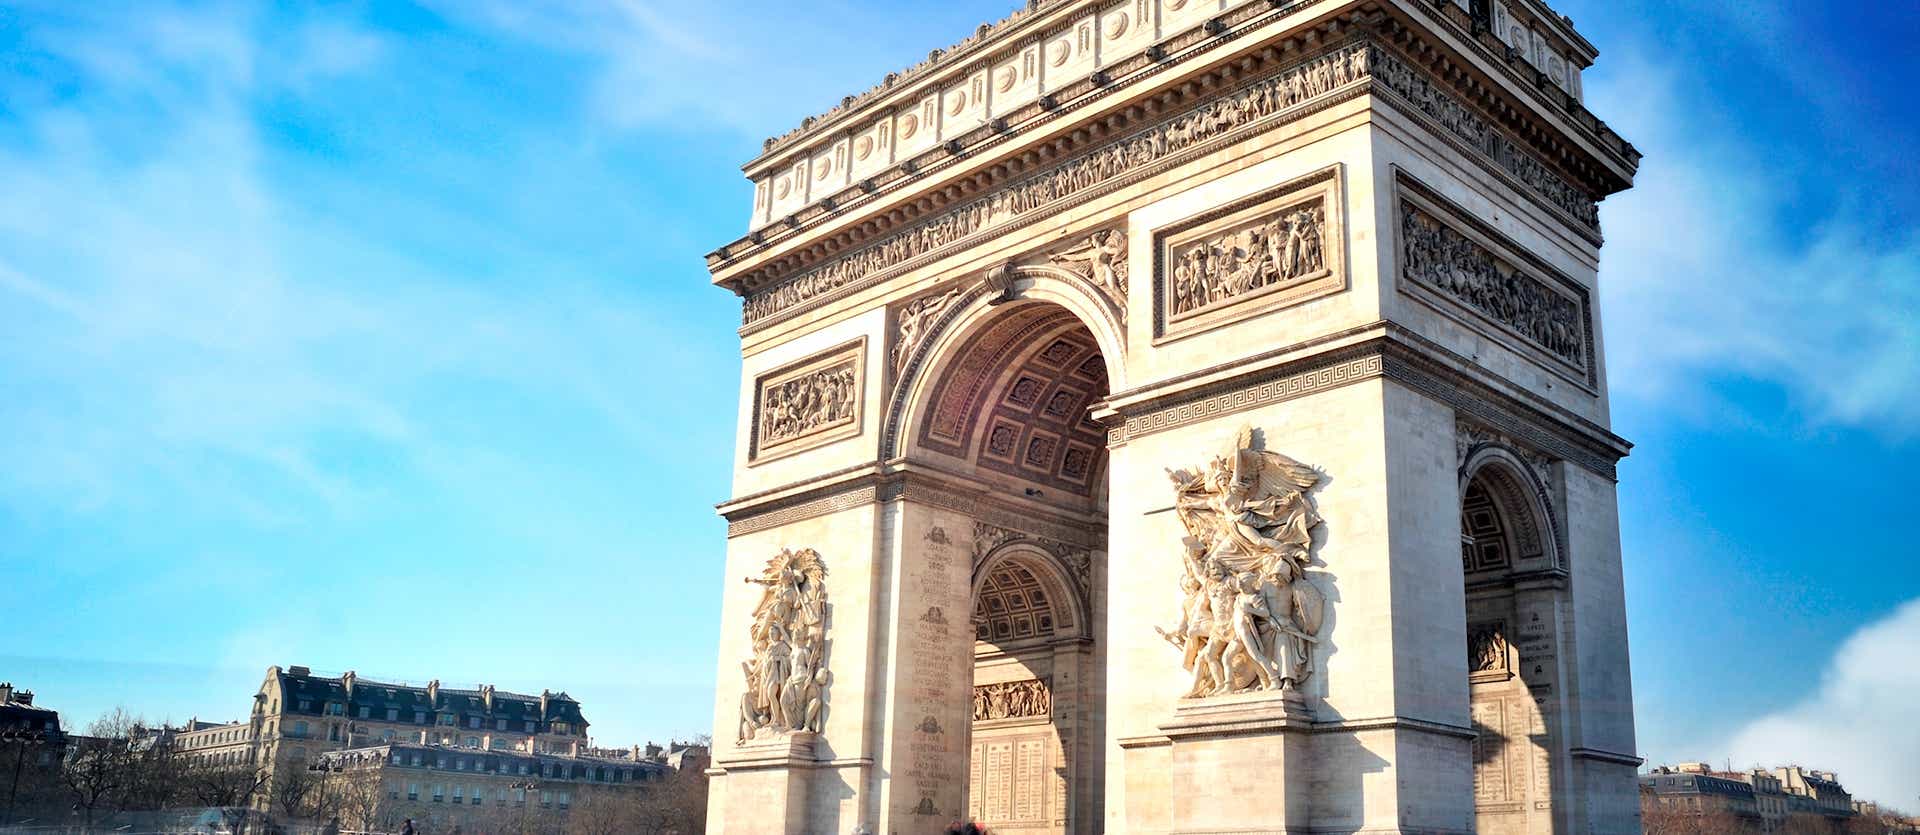 Arc de Triomphe <span class="iconos separador"></span> Paris <span class="iconos separador"></span> France